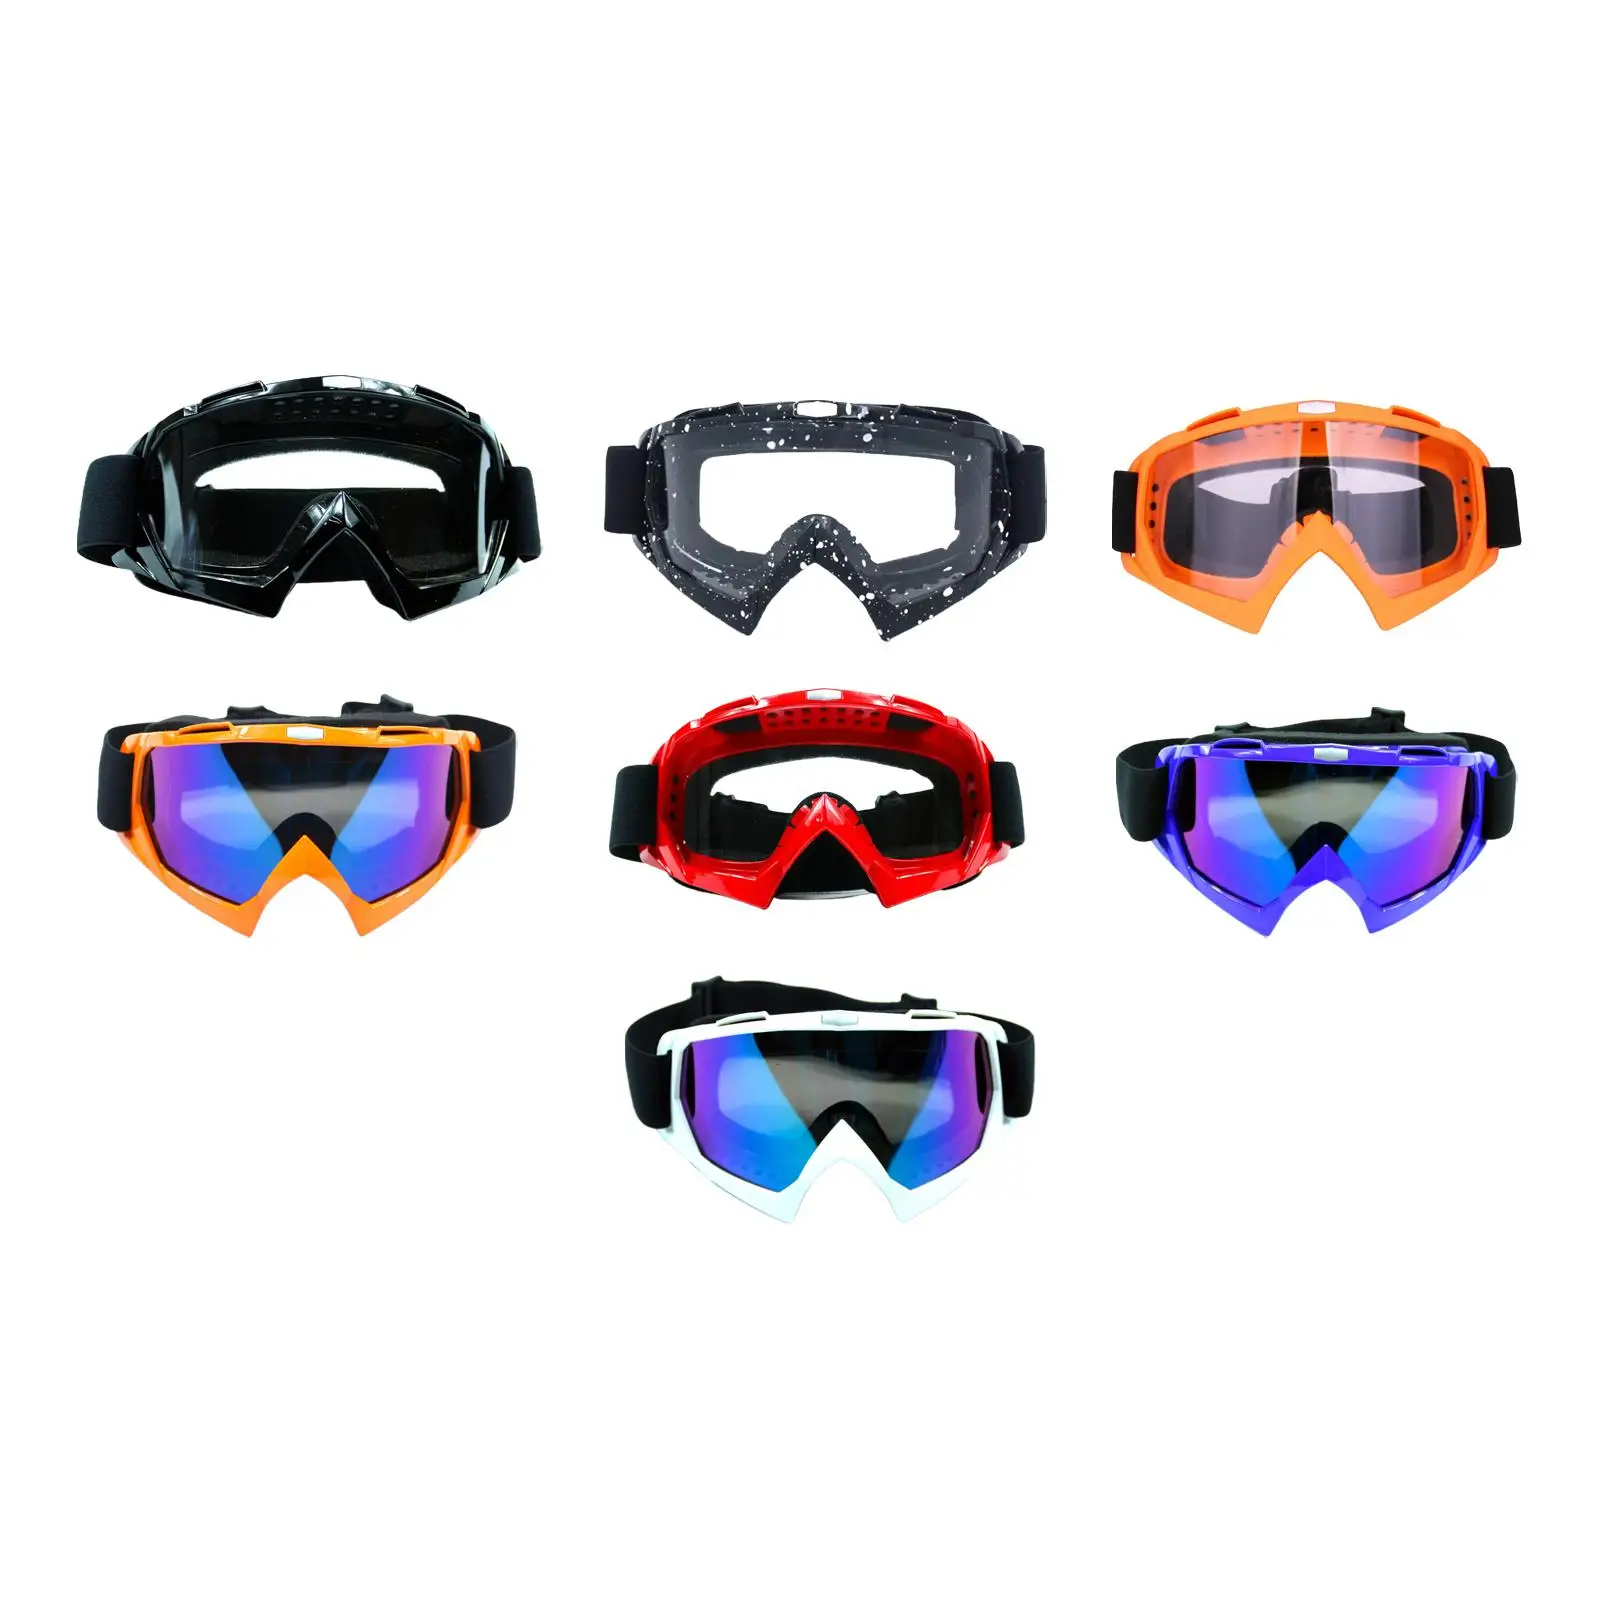 

Защитные очки для активного отдыха, ветрозащитные очки унисекс, защита глаз для пеших прогулок, тренировок, баскетбола, велоспорта, футбола